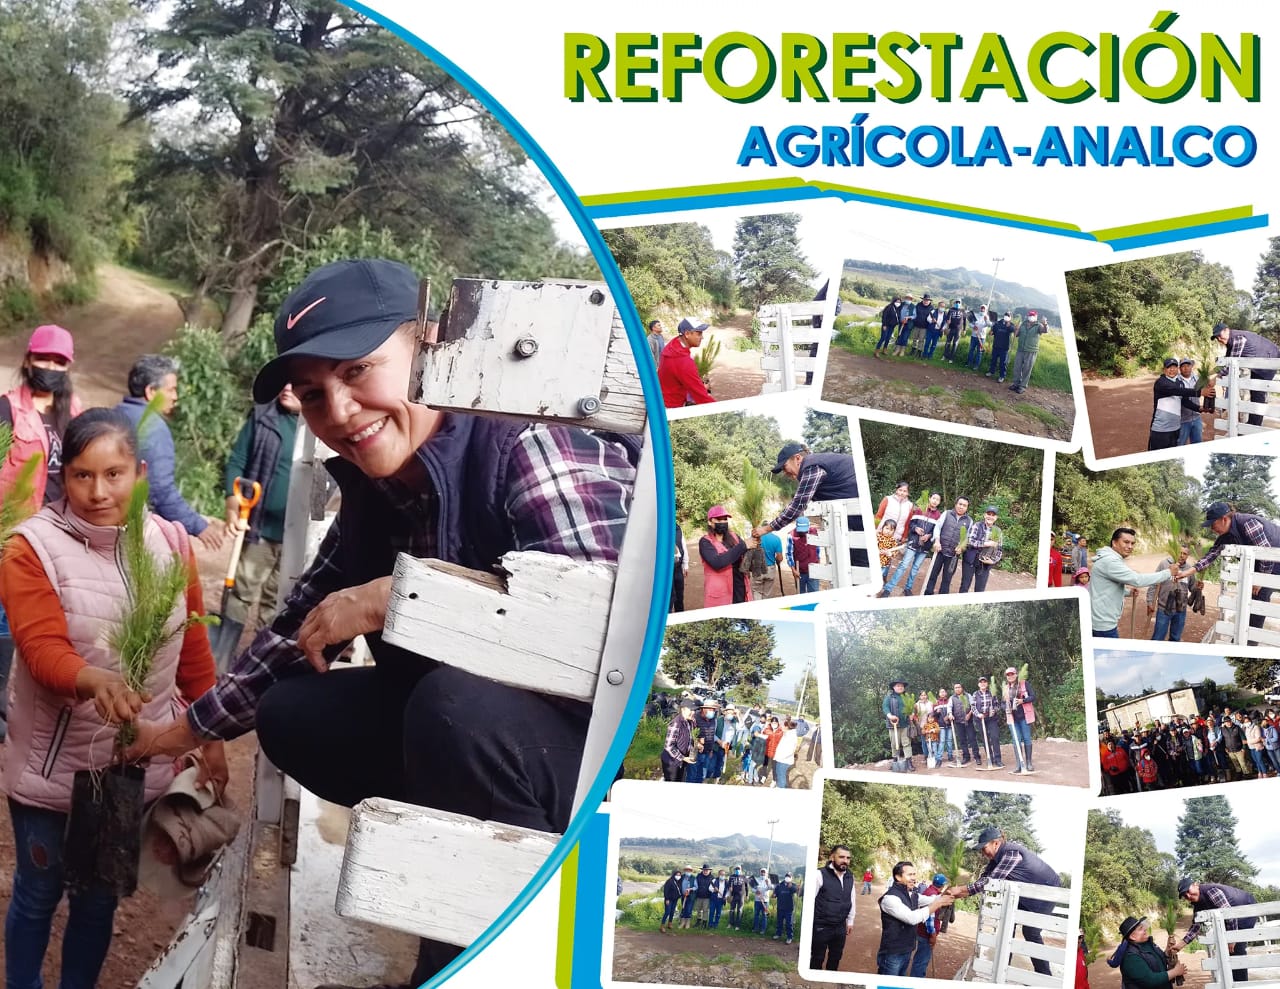 Reforestación Agrícola - Analco